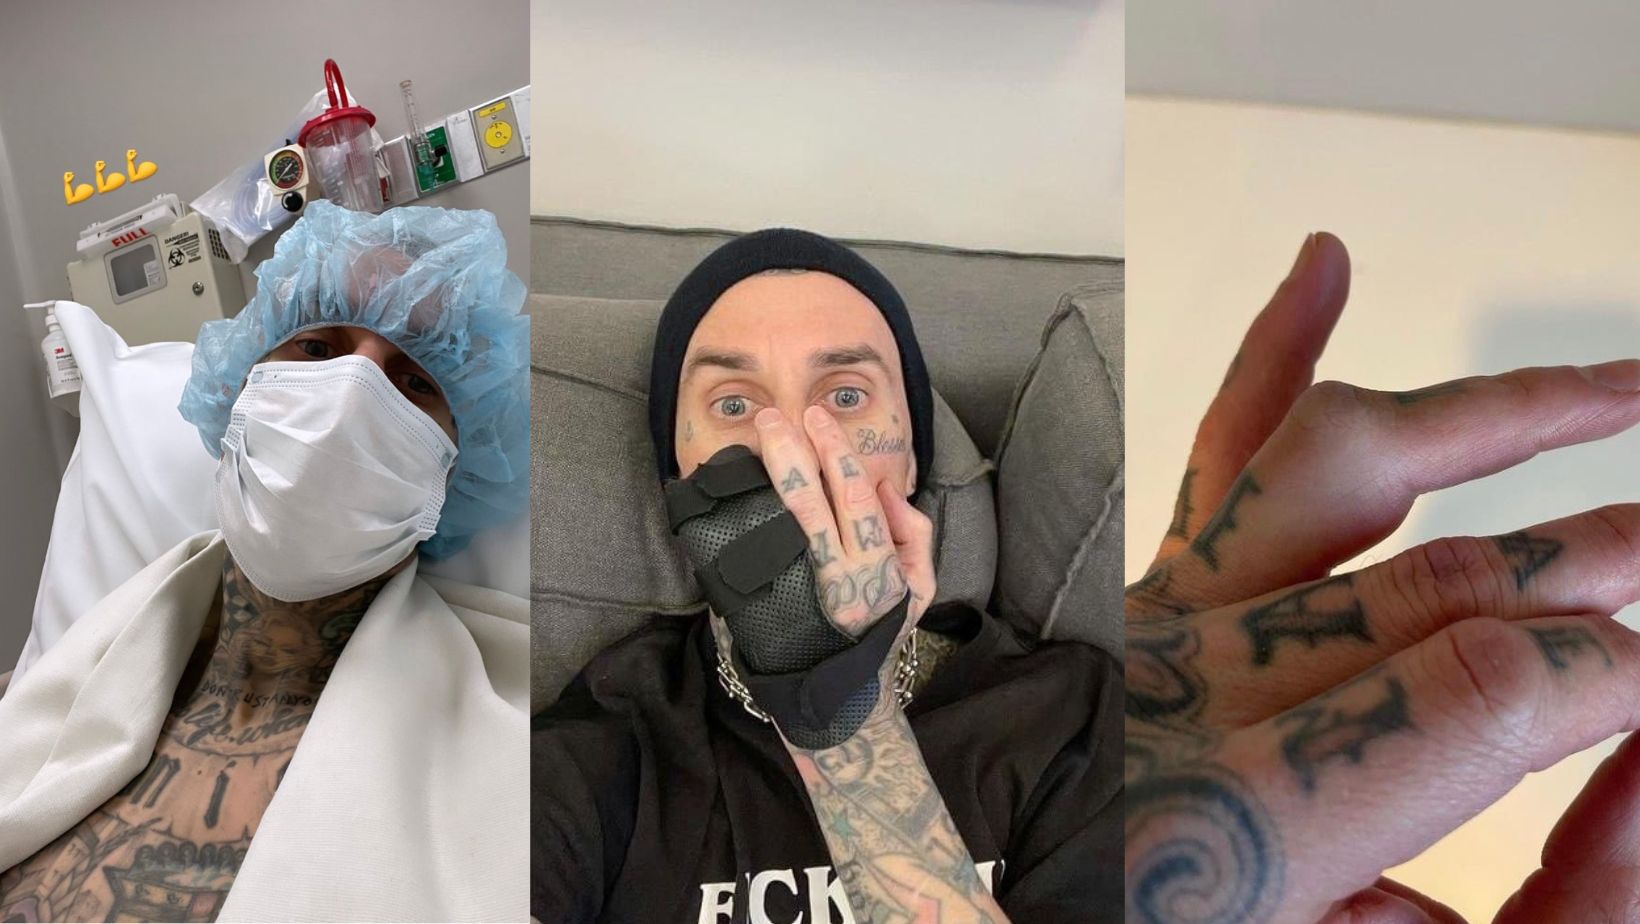 Travis Barker causó preocupación por operación en un dedo a pocas semanas  de su concierto en México - Infobae